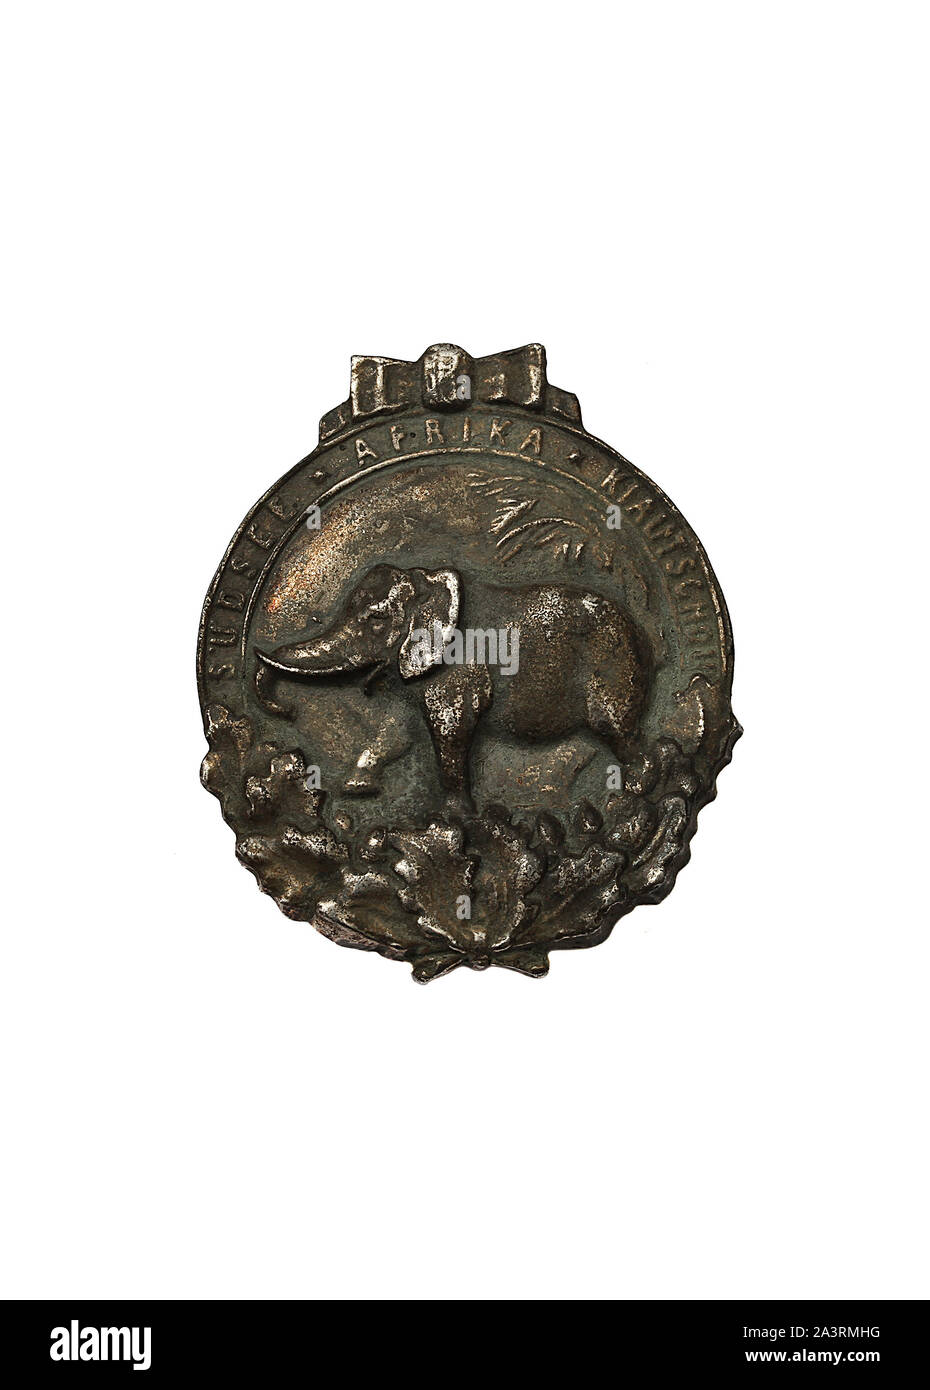 Un honneur coloniale allemande 'Elephant' Badge. L'insigne honneur coloniale Allemande a également appelé l'Elephantenorden (ordre de l'éléphant). Décerné à Germ Banque D'Images